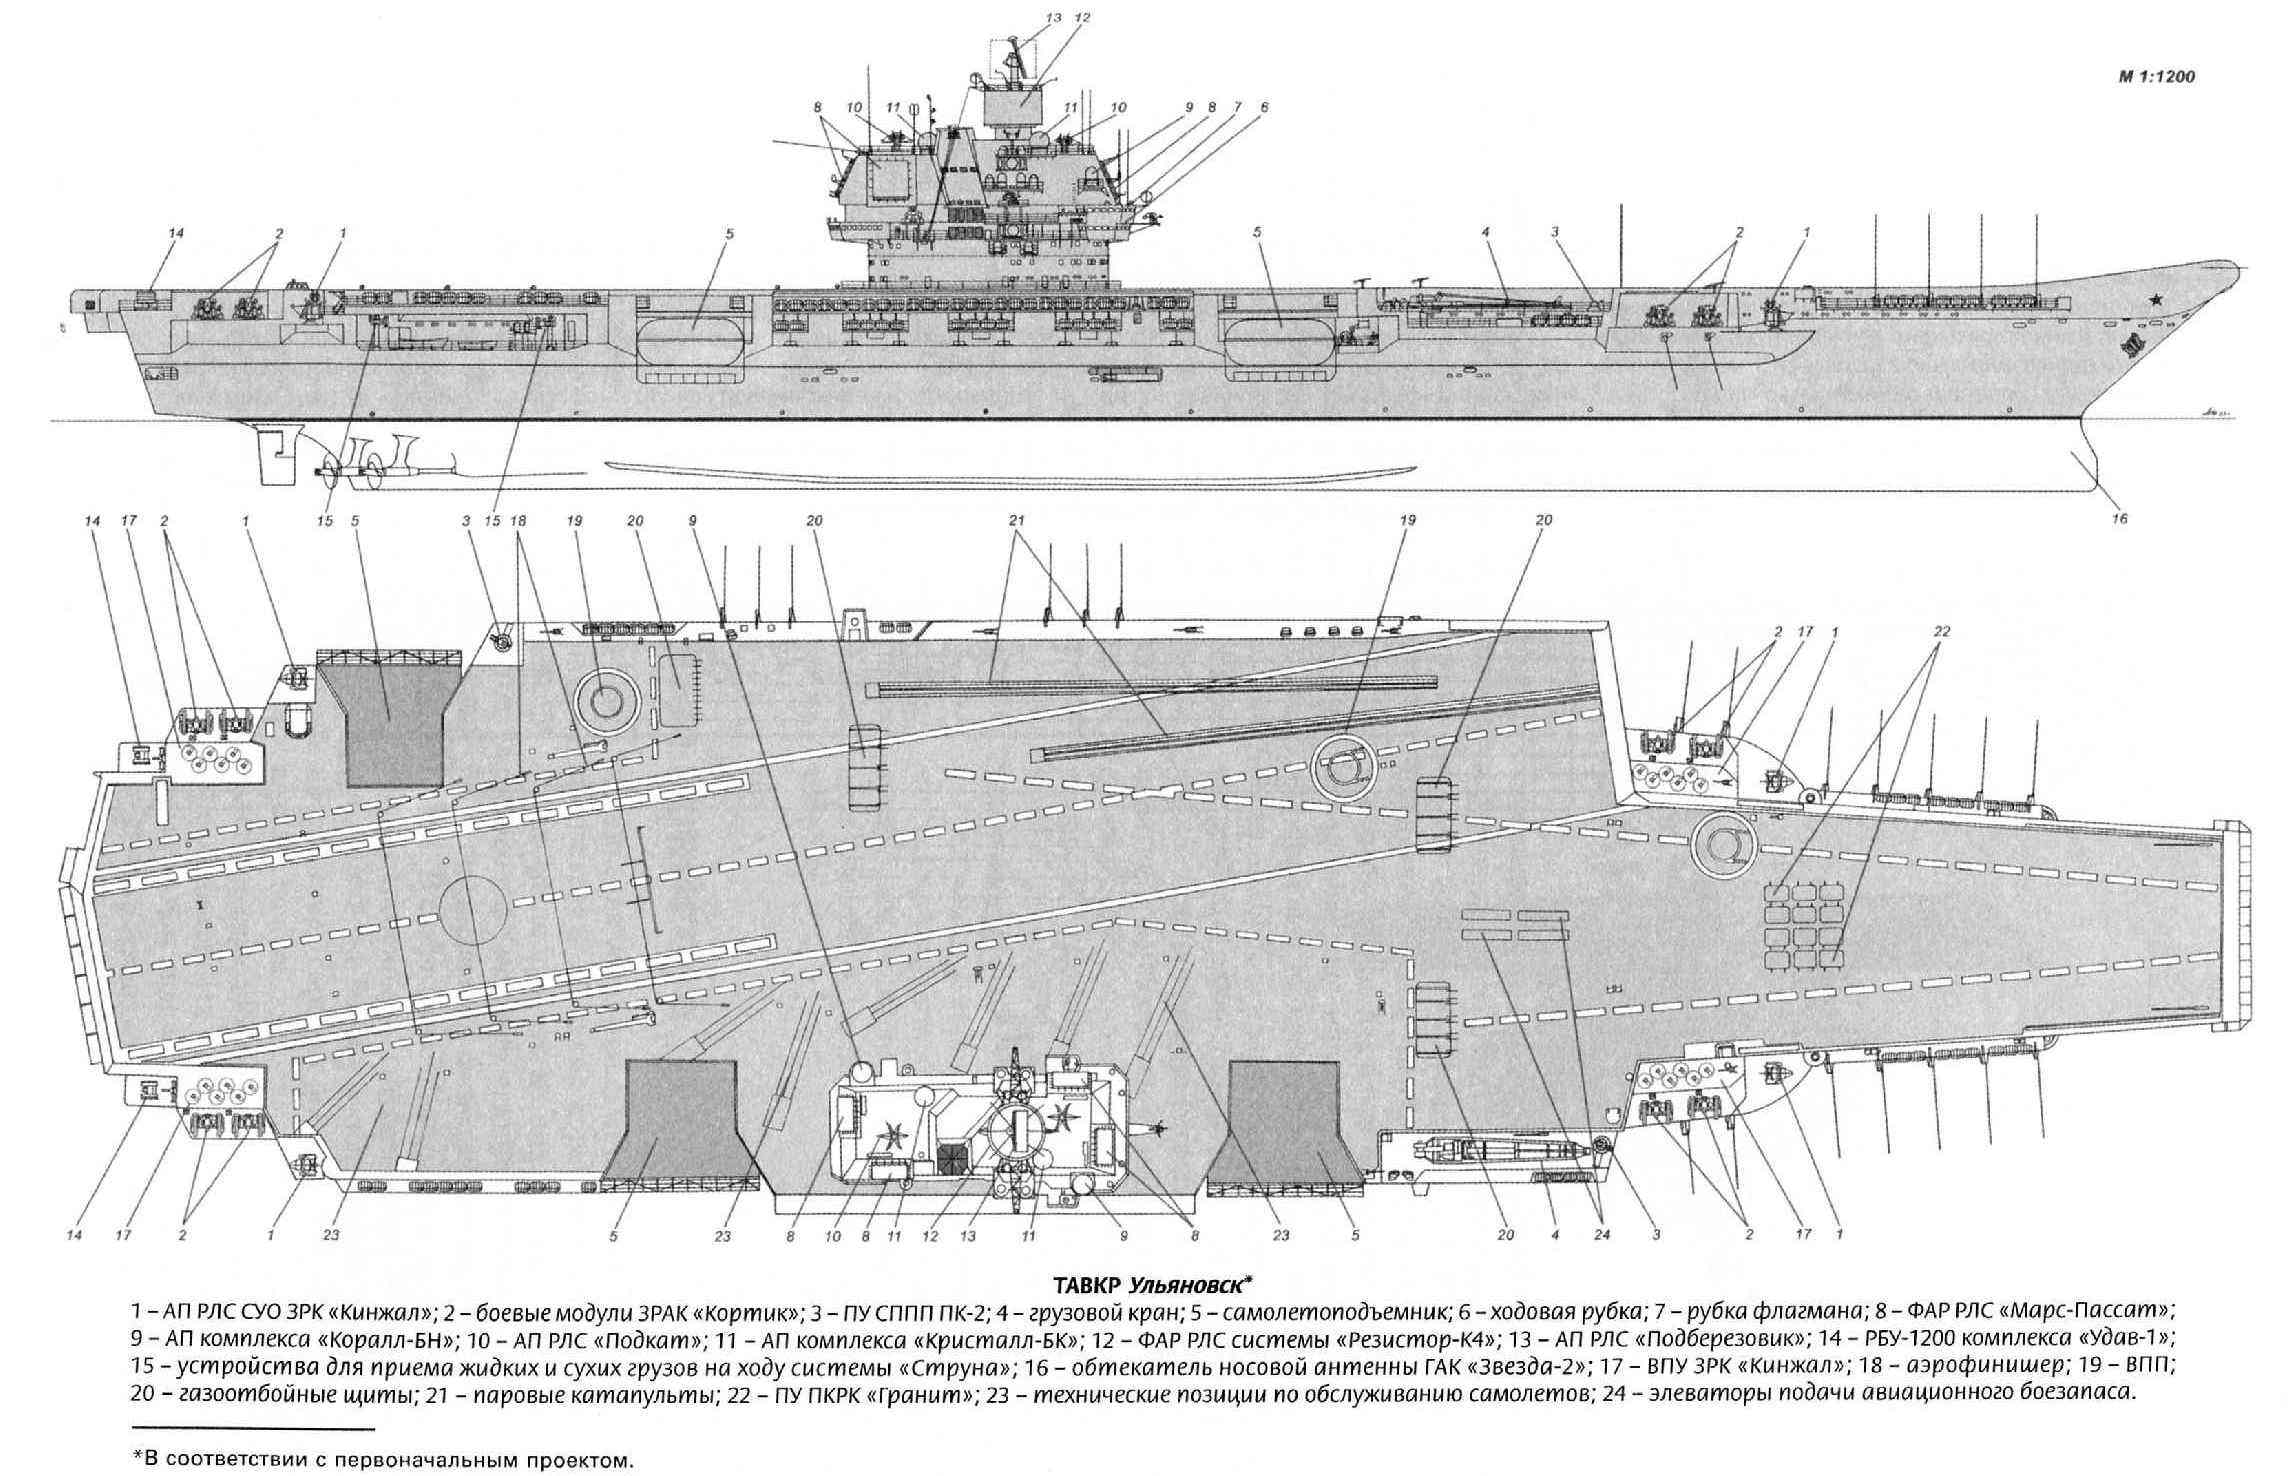 1143.7型航空母艦(烏里揚諾夫斯克號核動力航母（蘇聯海軍核航母）)